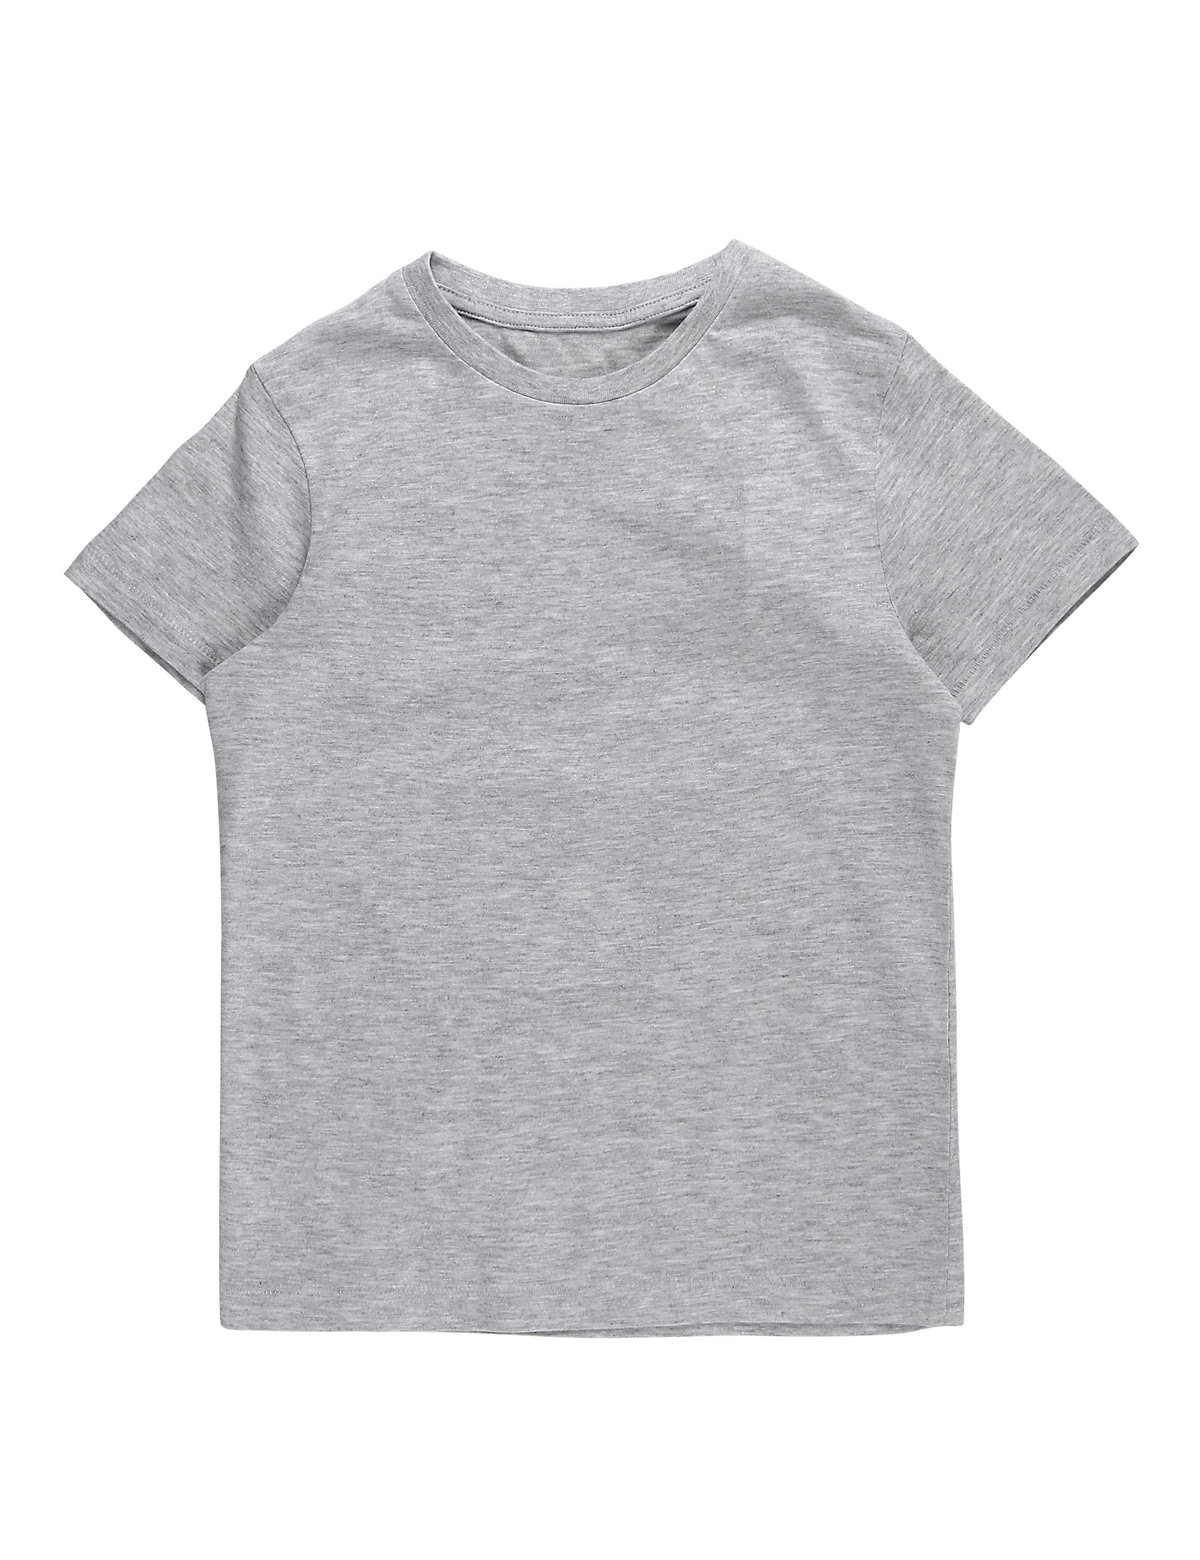 Cotton Mix Plain Round Neck T-Shirt